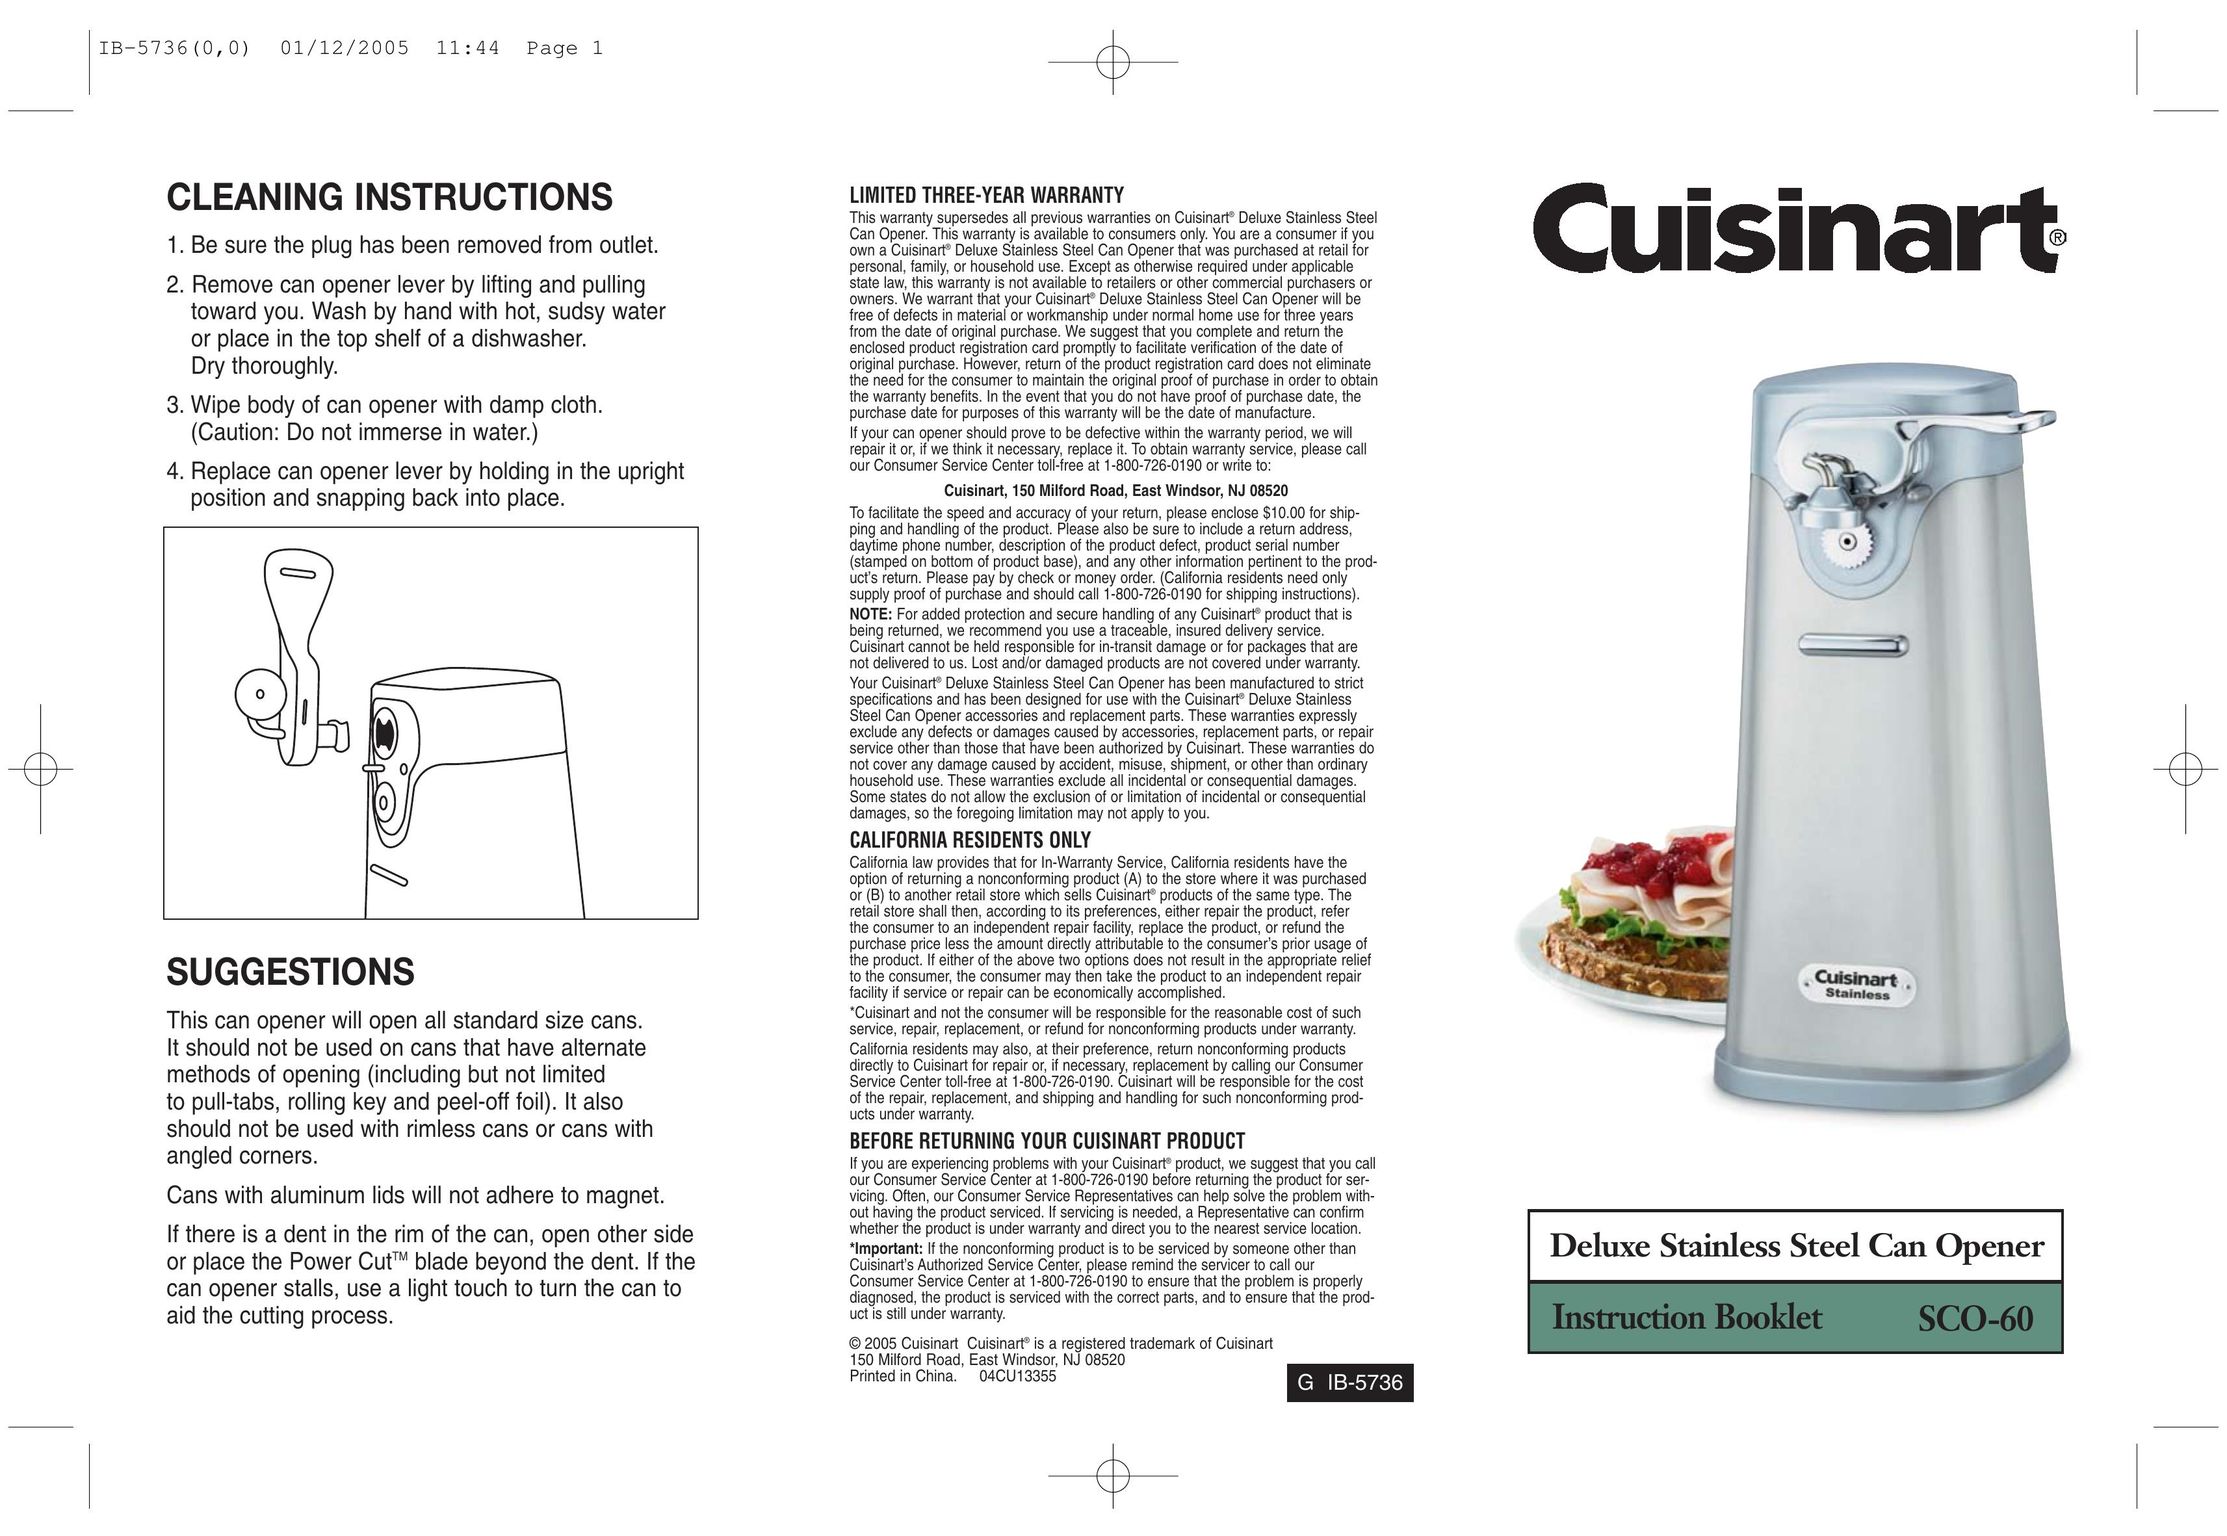 Cuisinart GHI0303IB-1-1 Can Opener User Manual